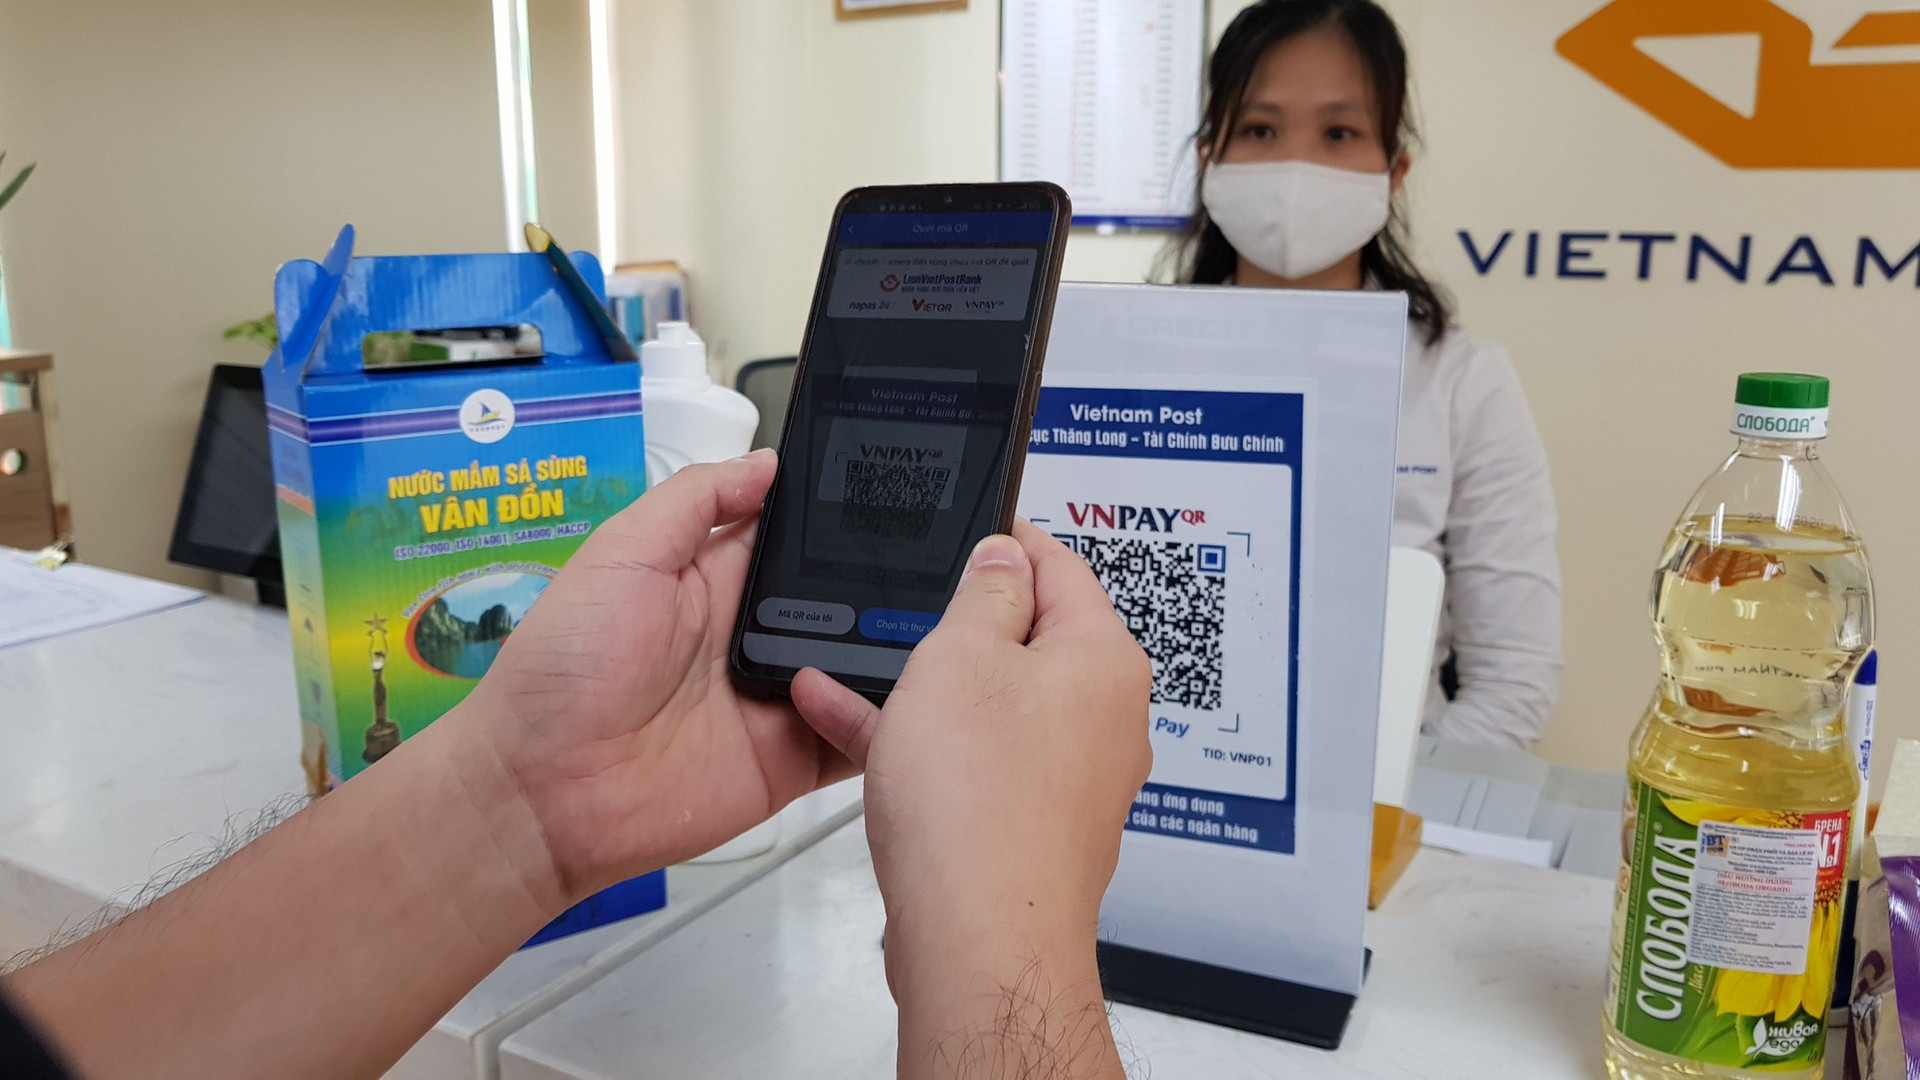 Bưu điện tăng 3 lần hàng hoá cho Hà Nội, VNPT hỗ trợ khách hàng 24/7 - Ảnh 3.